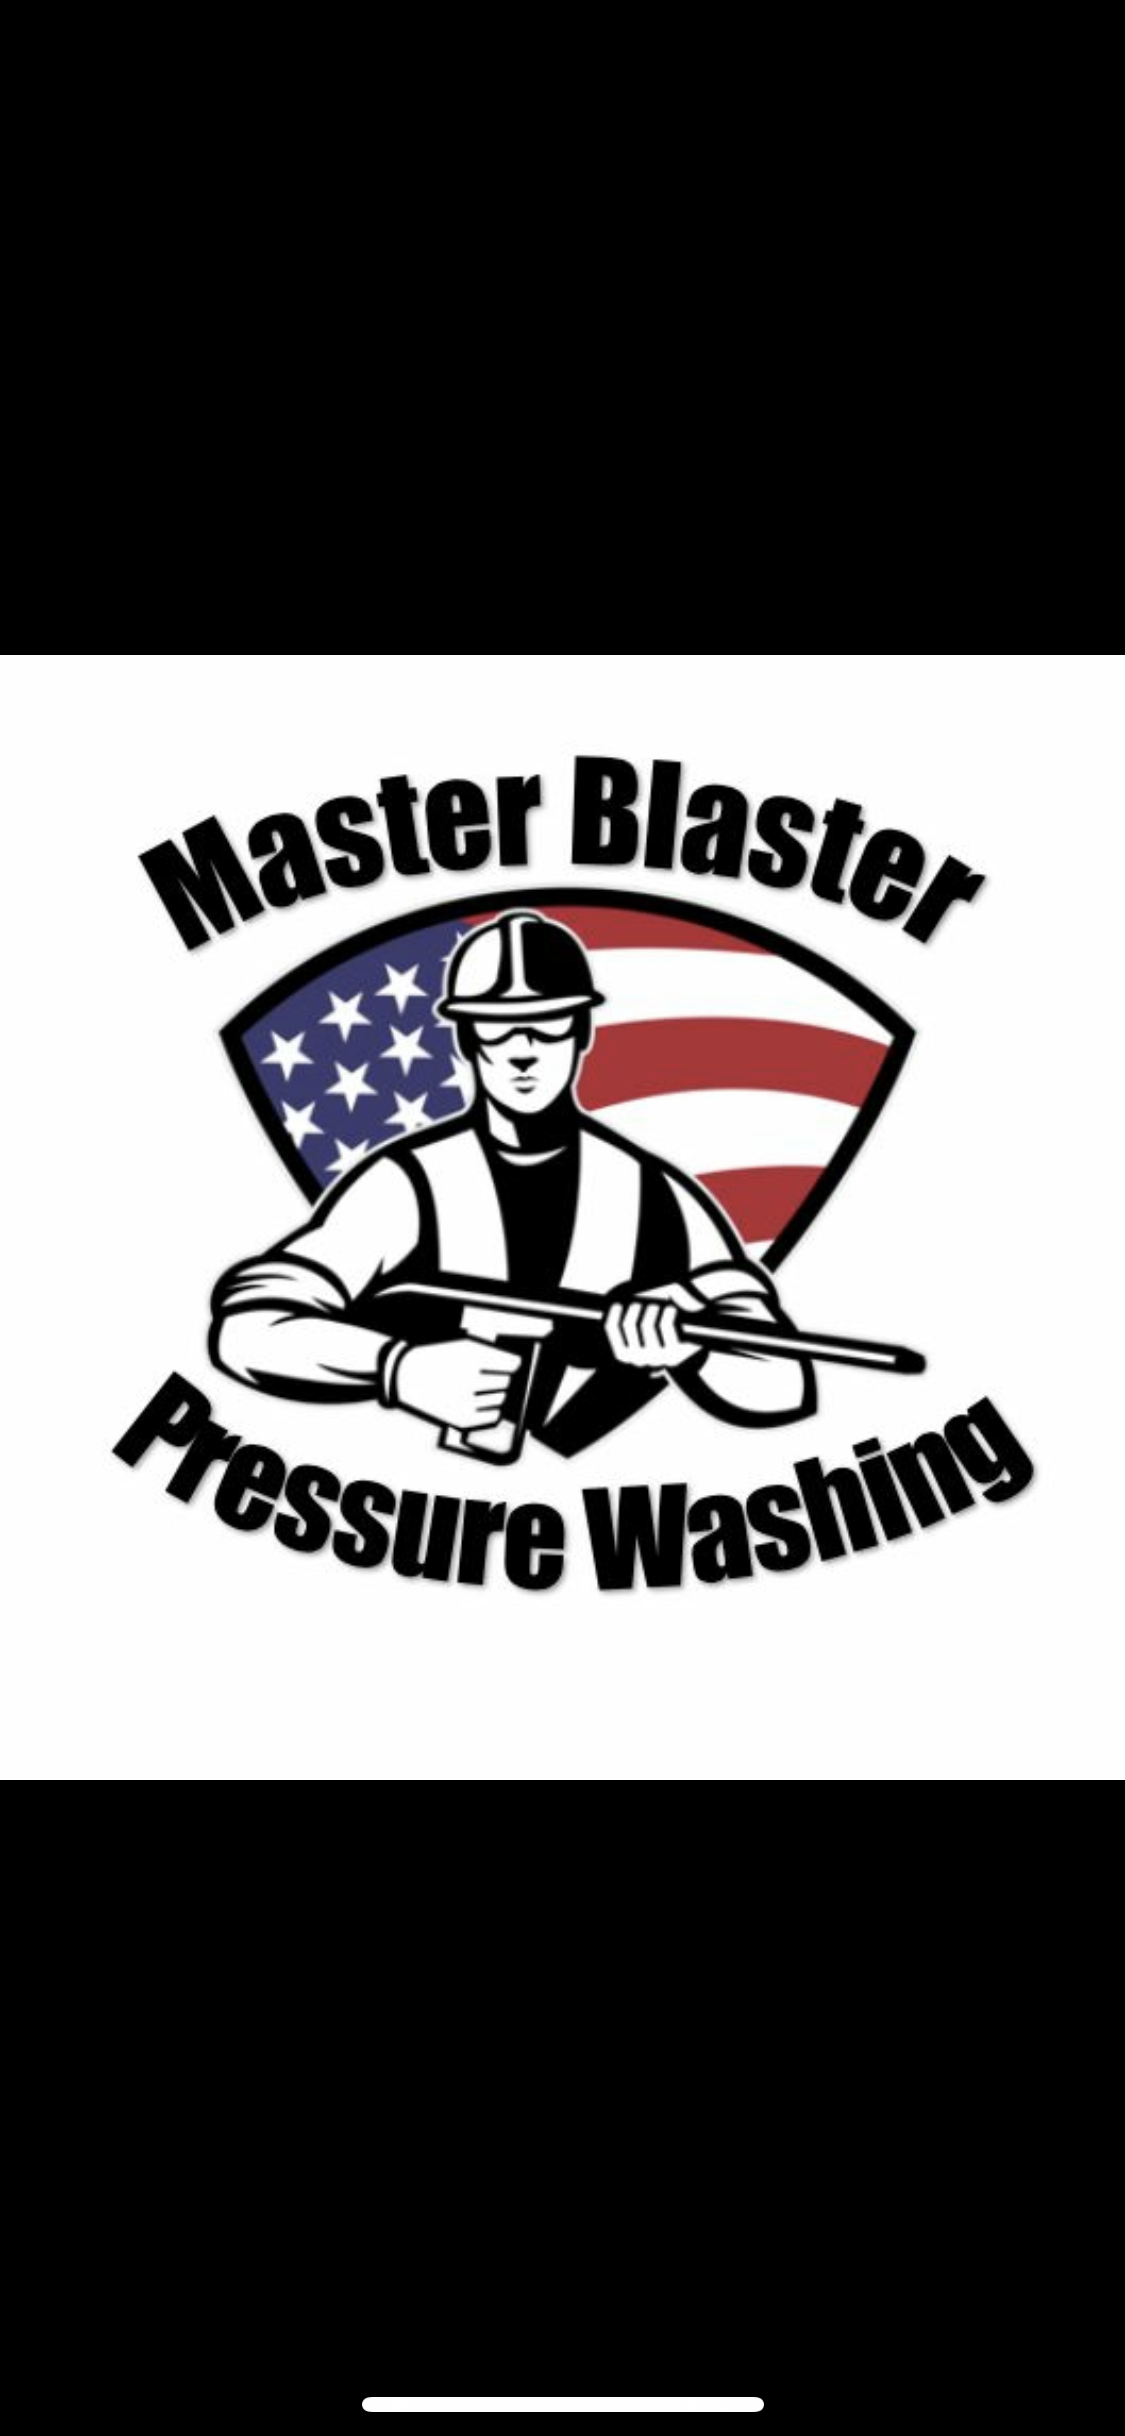 Master Blaster Pressure Washing Logo